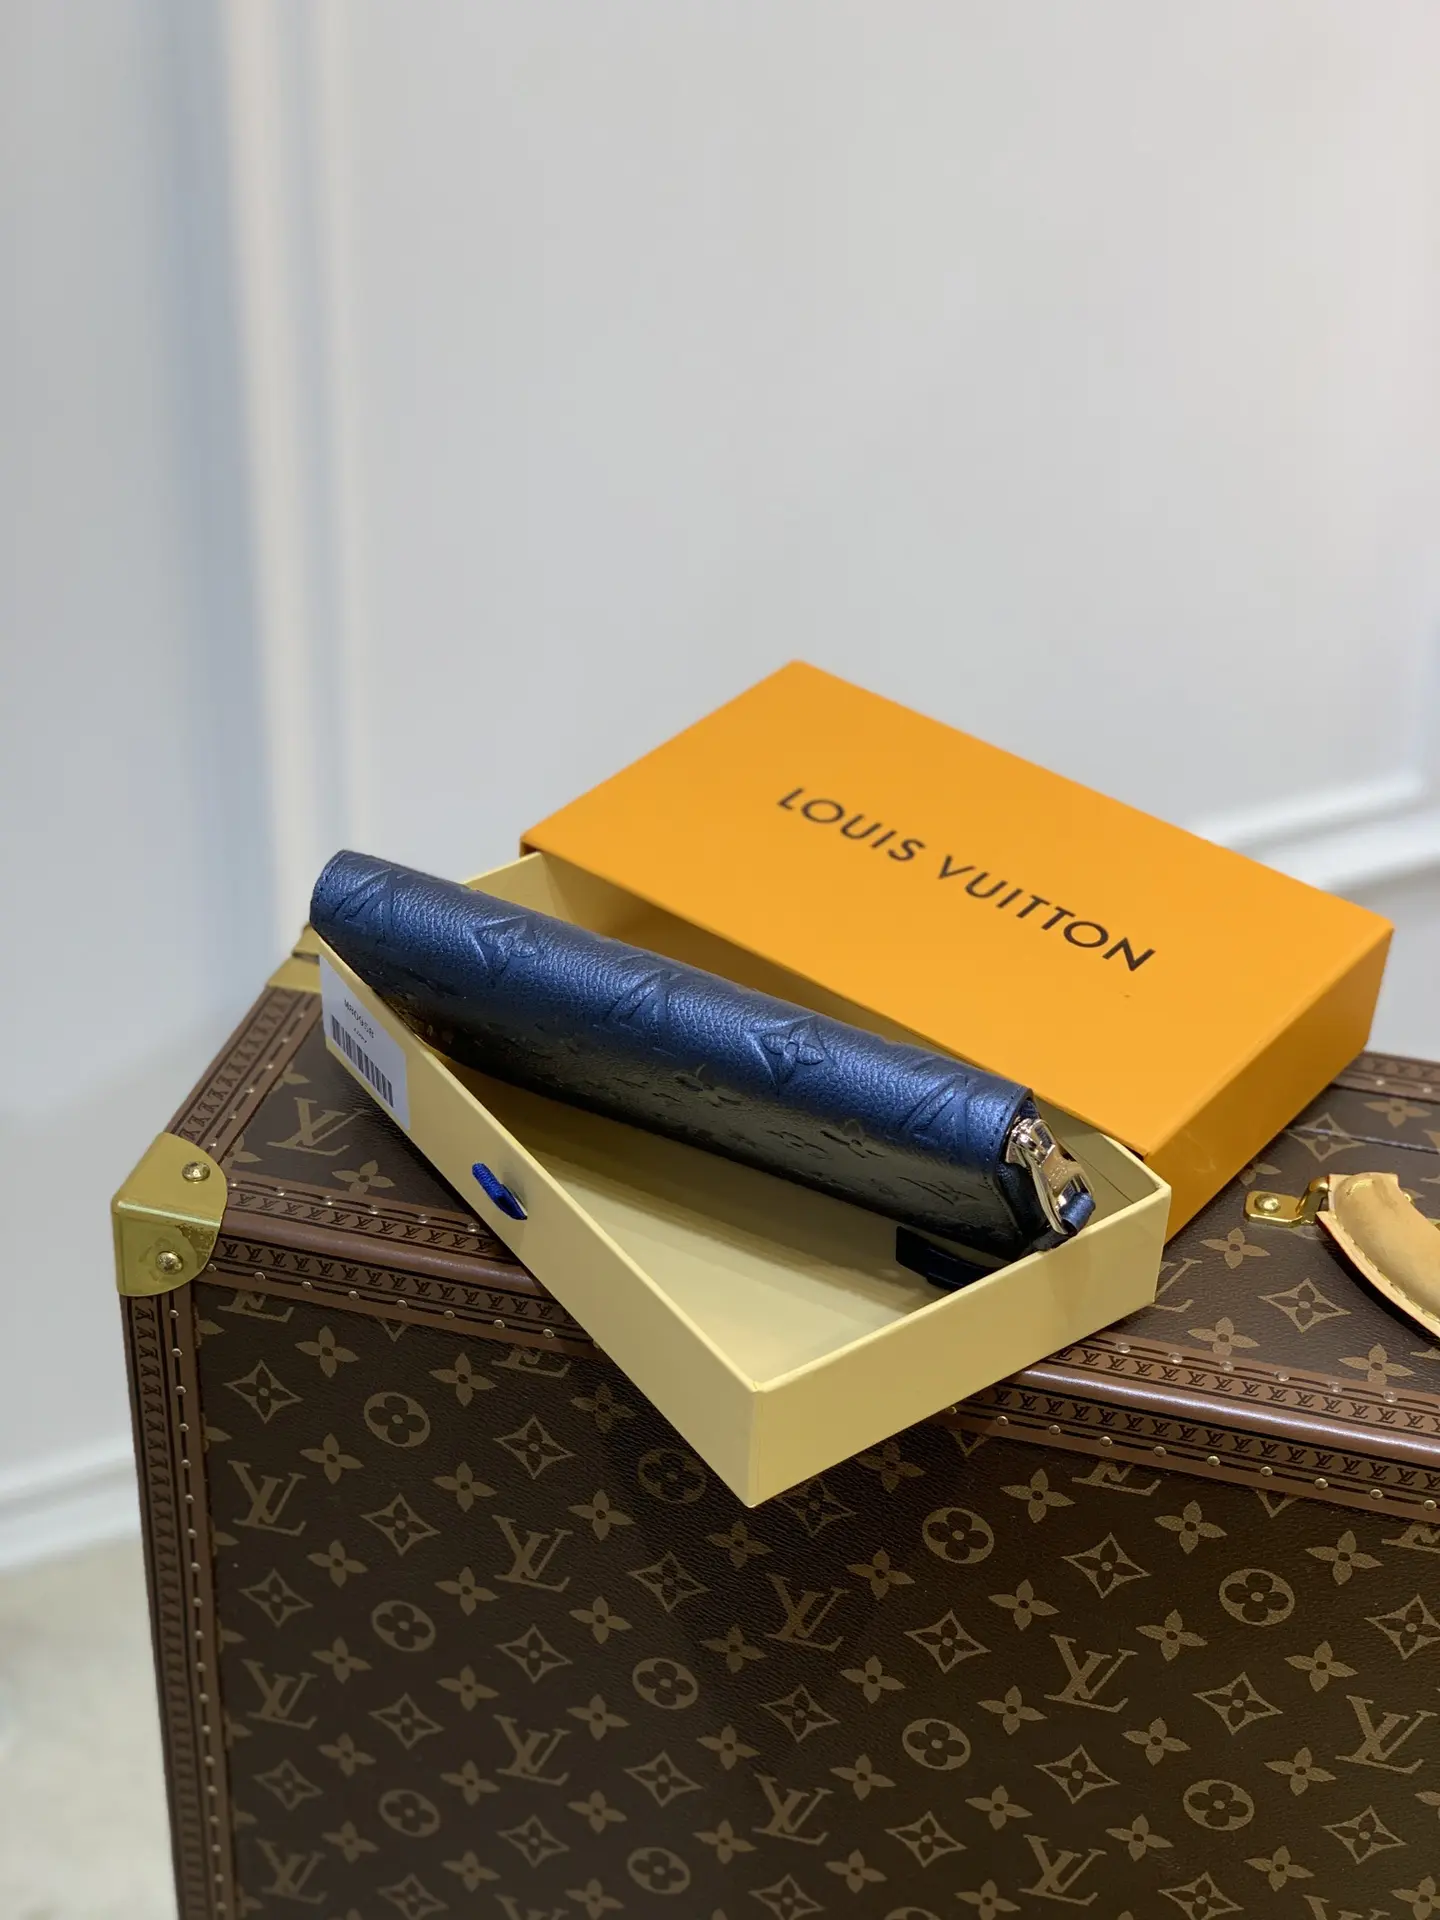 Louis Vuitton Zippy Handbags 